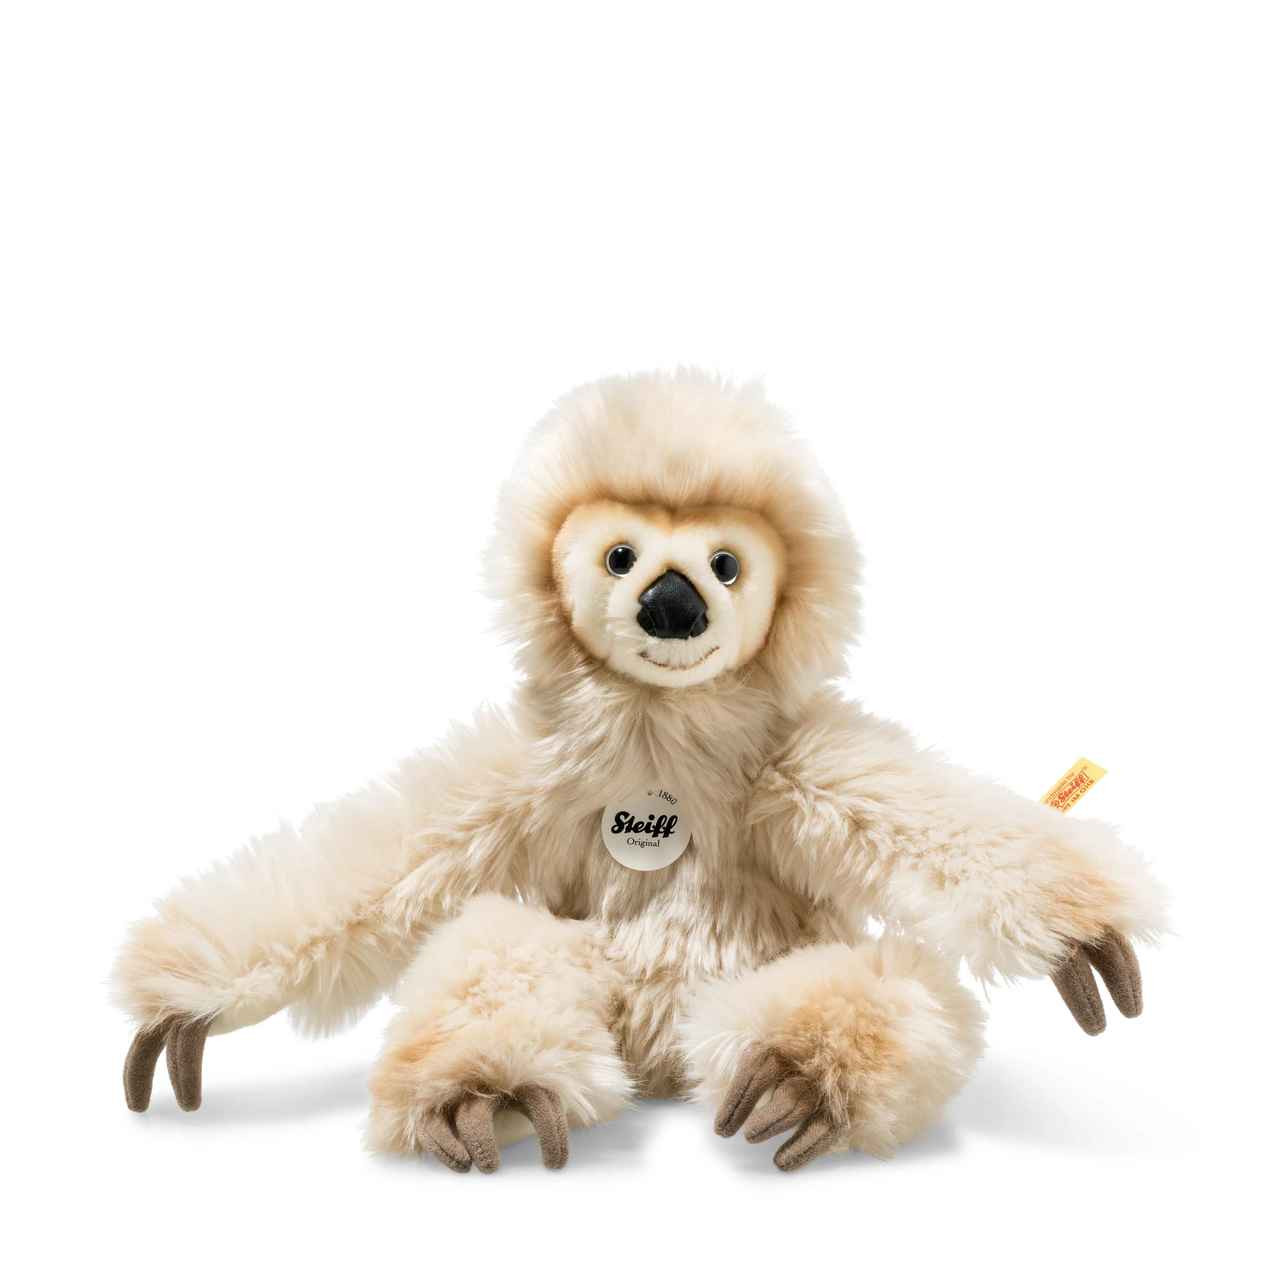 cuddly sloth teddy